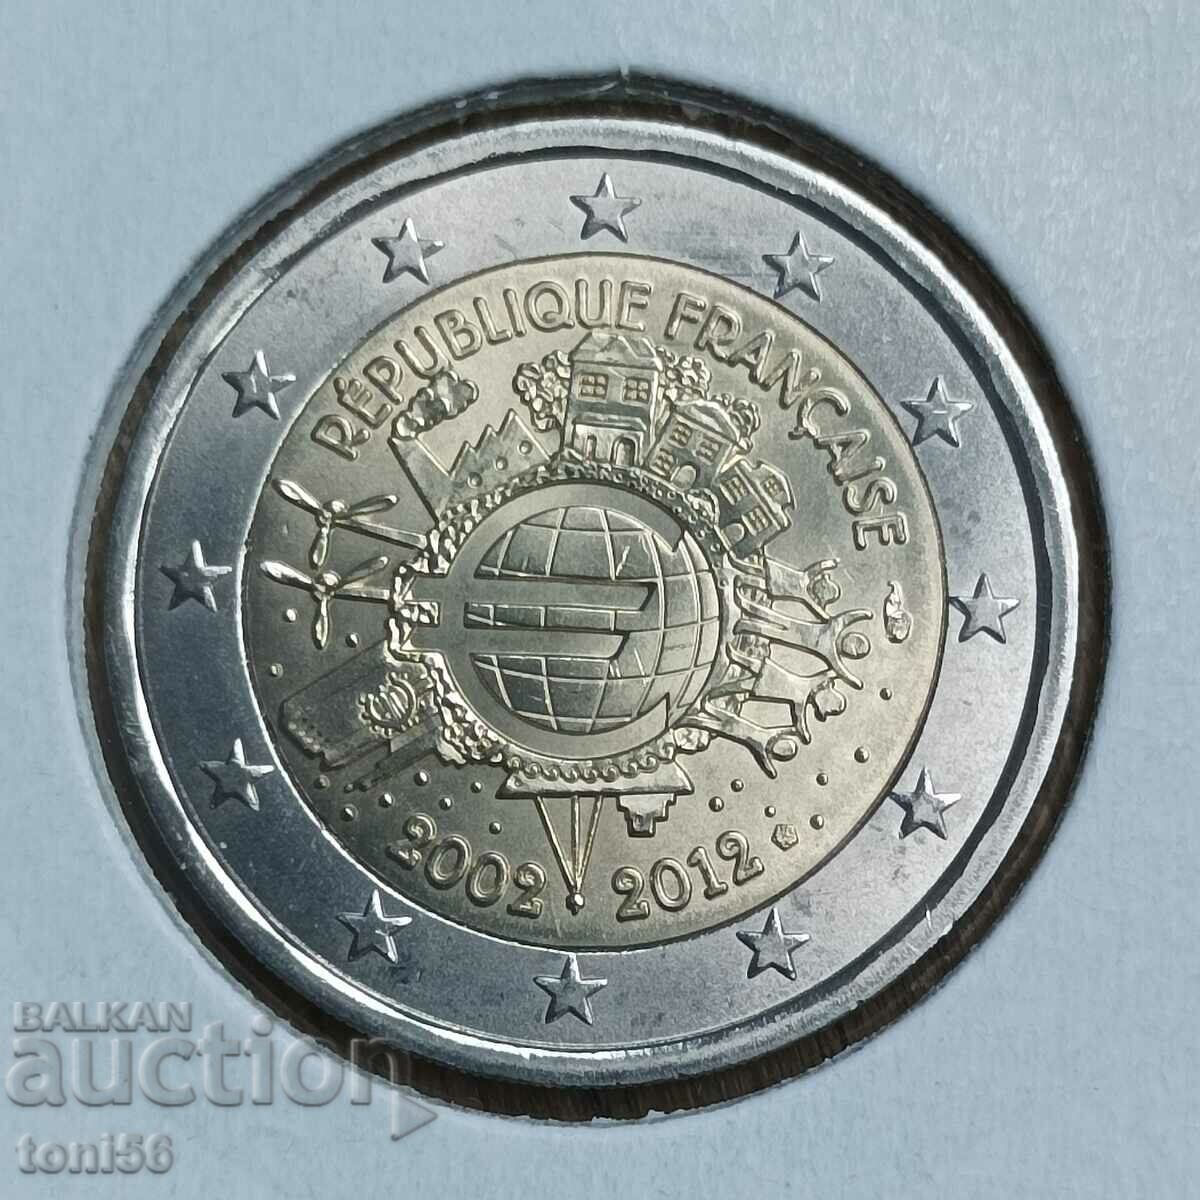 Γαλλία 2 ευρώ 2012 - 10 χρόνια "Κέρματα και τραπεζογραμμάτια ευρώ"